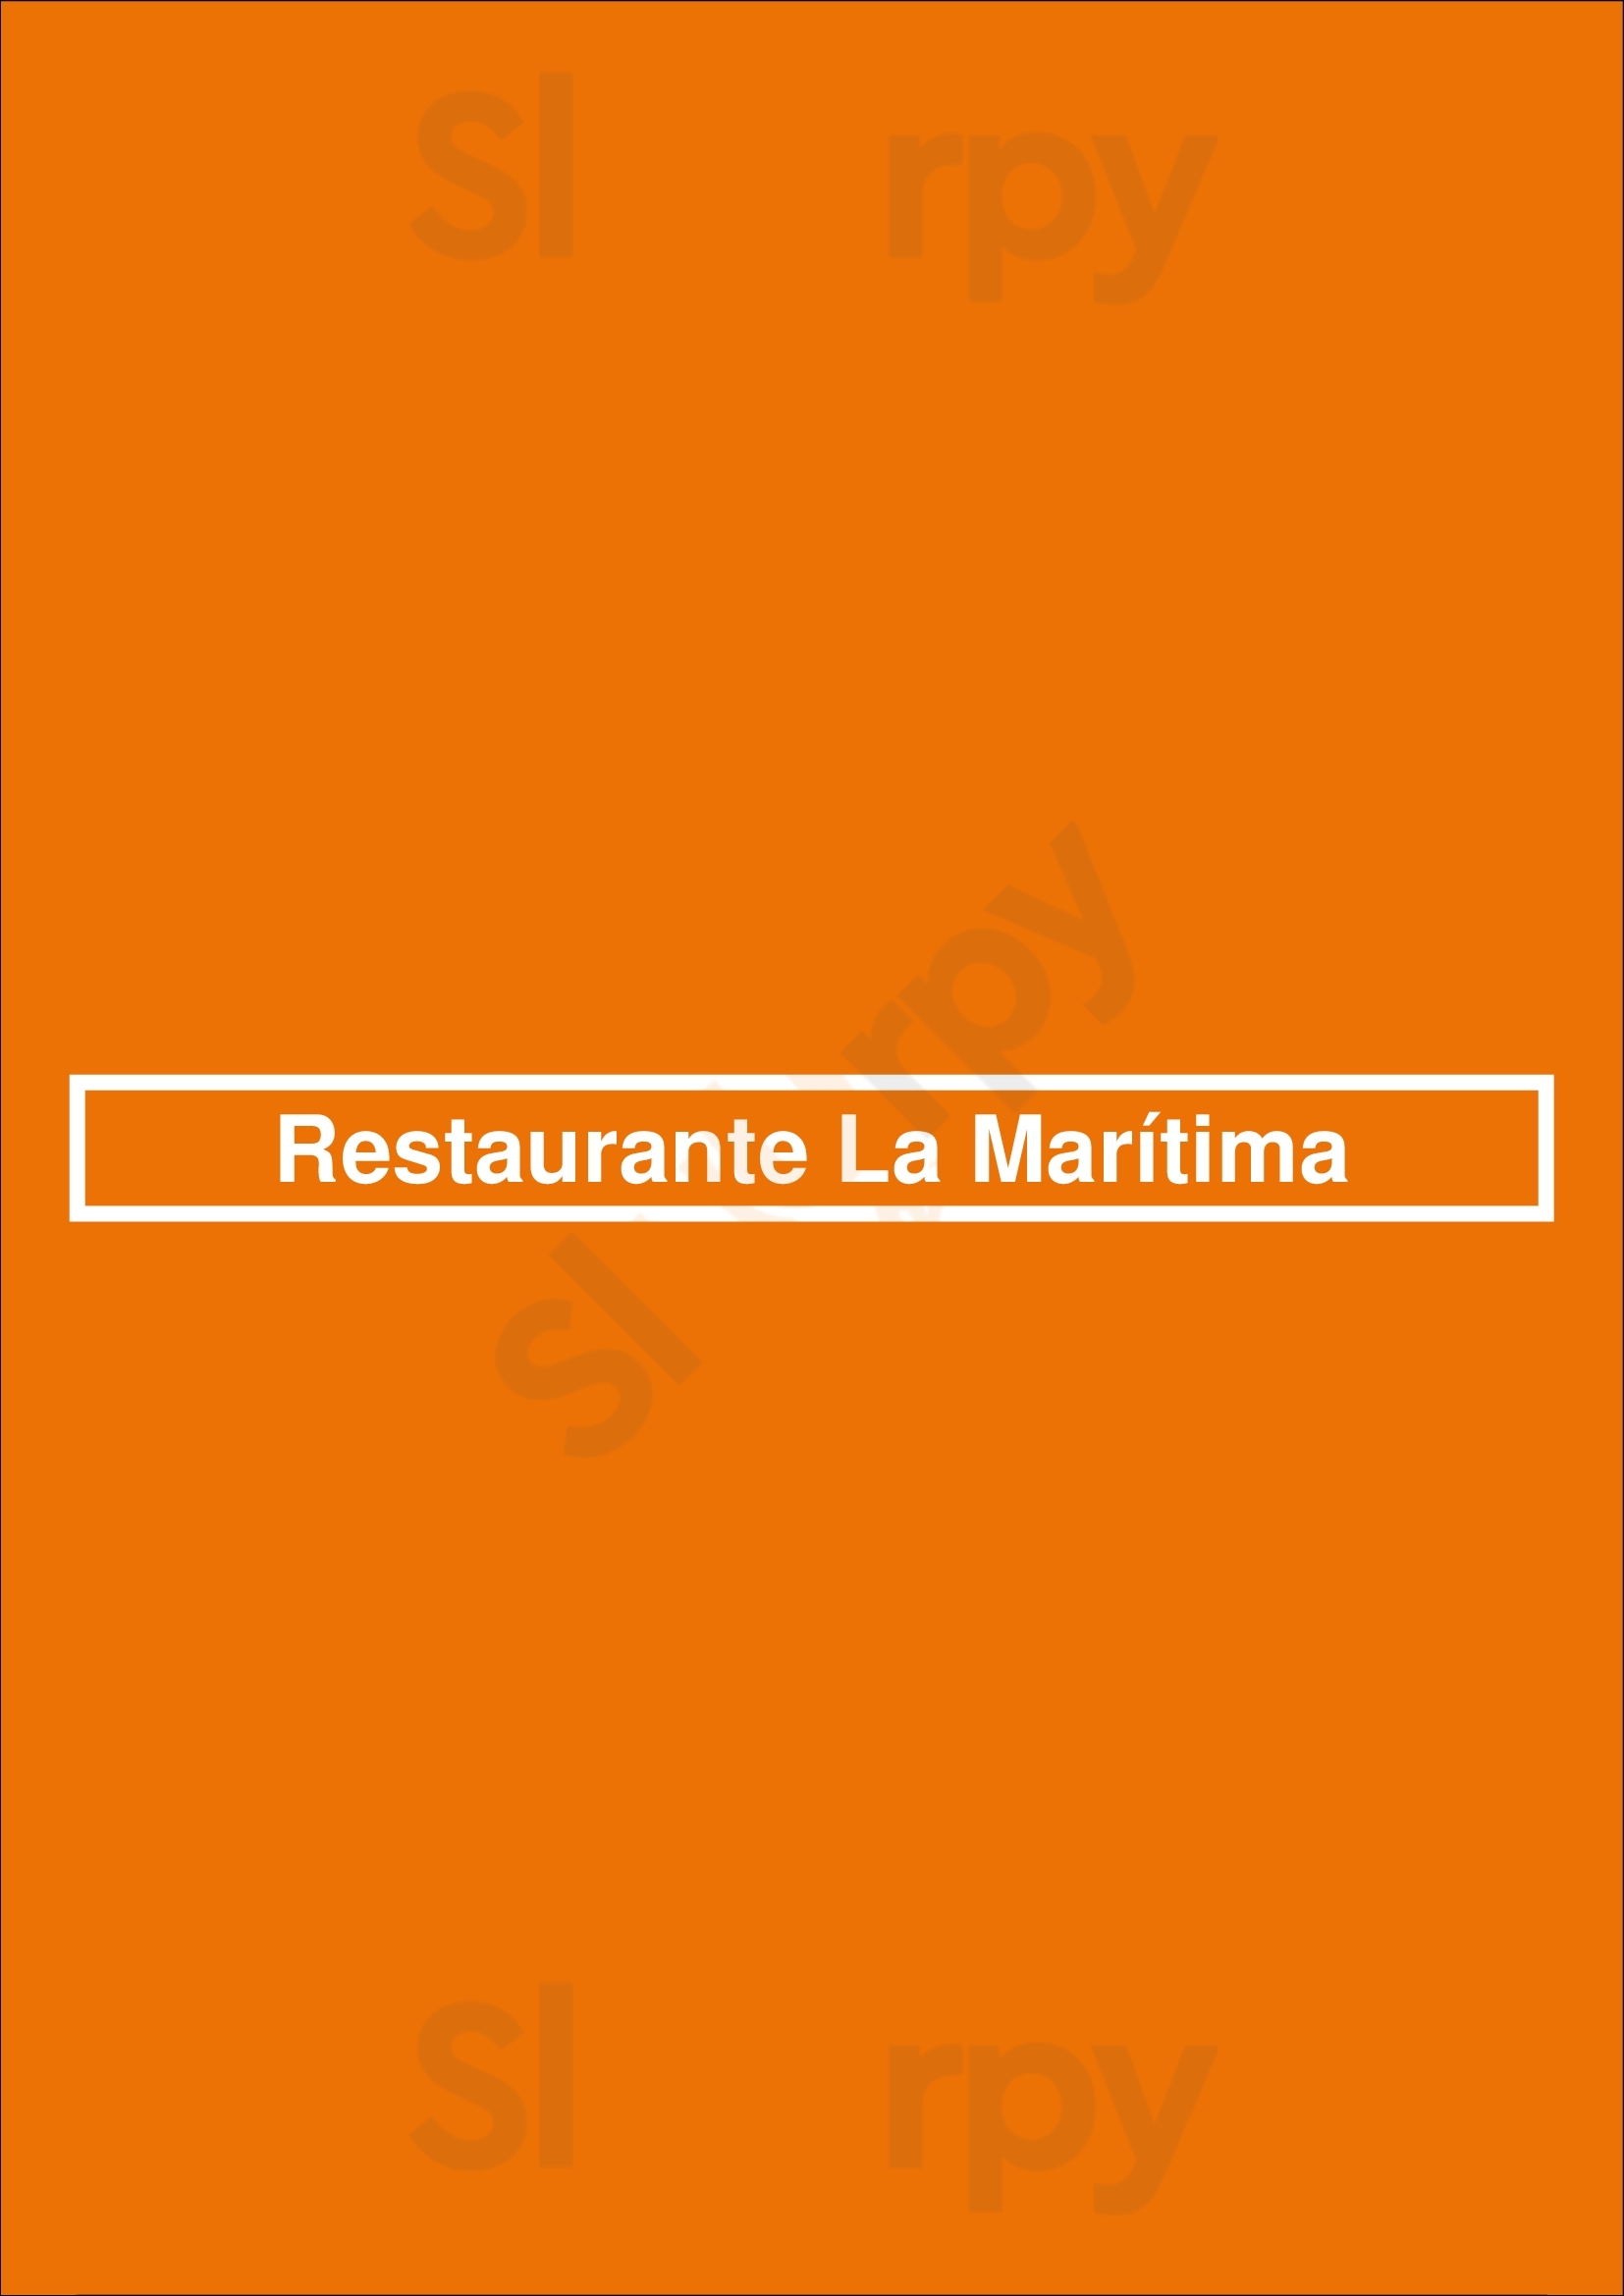 Restaurante La Marítima Valencia Menu - 1